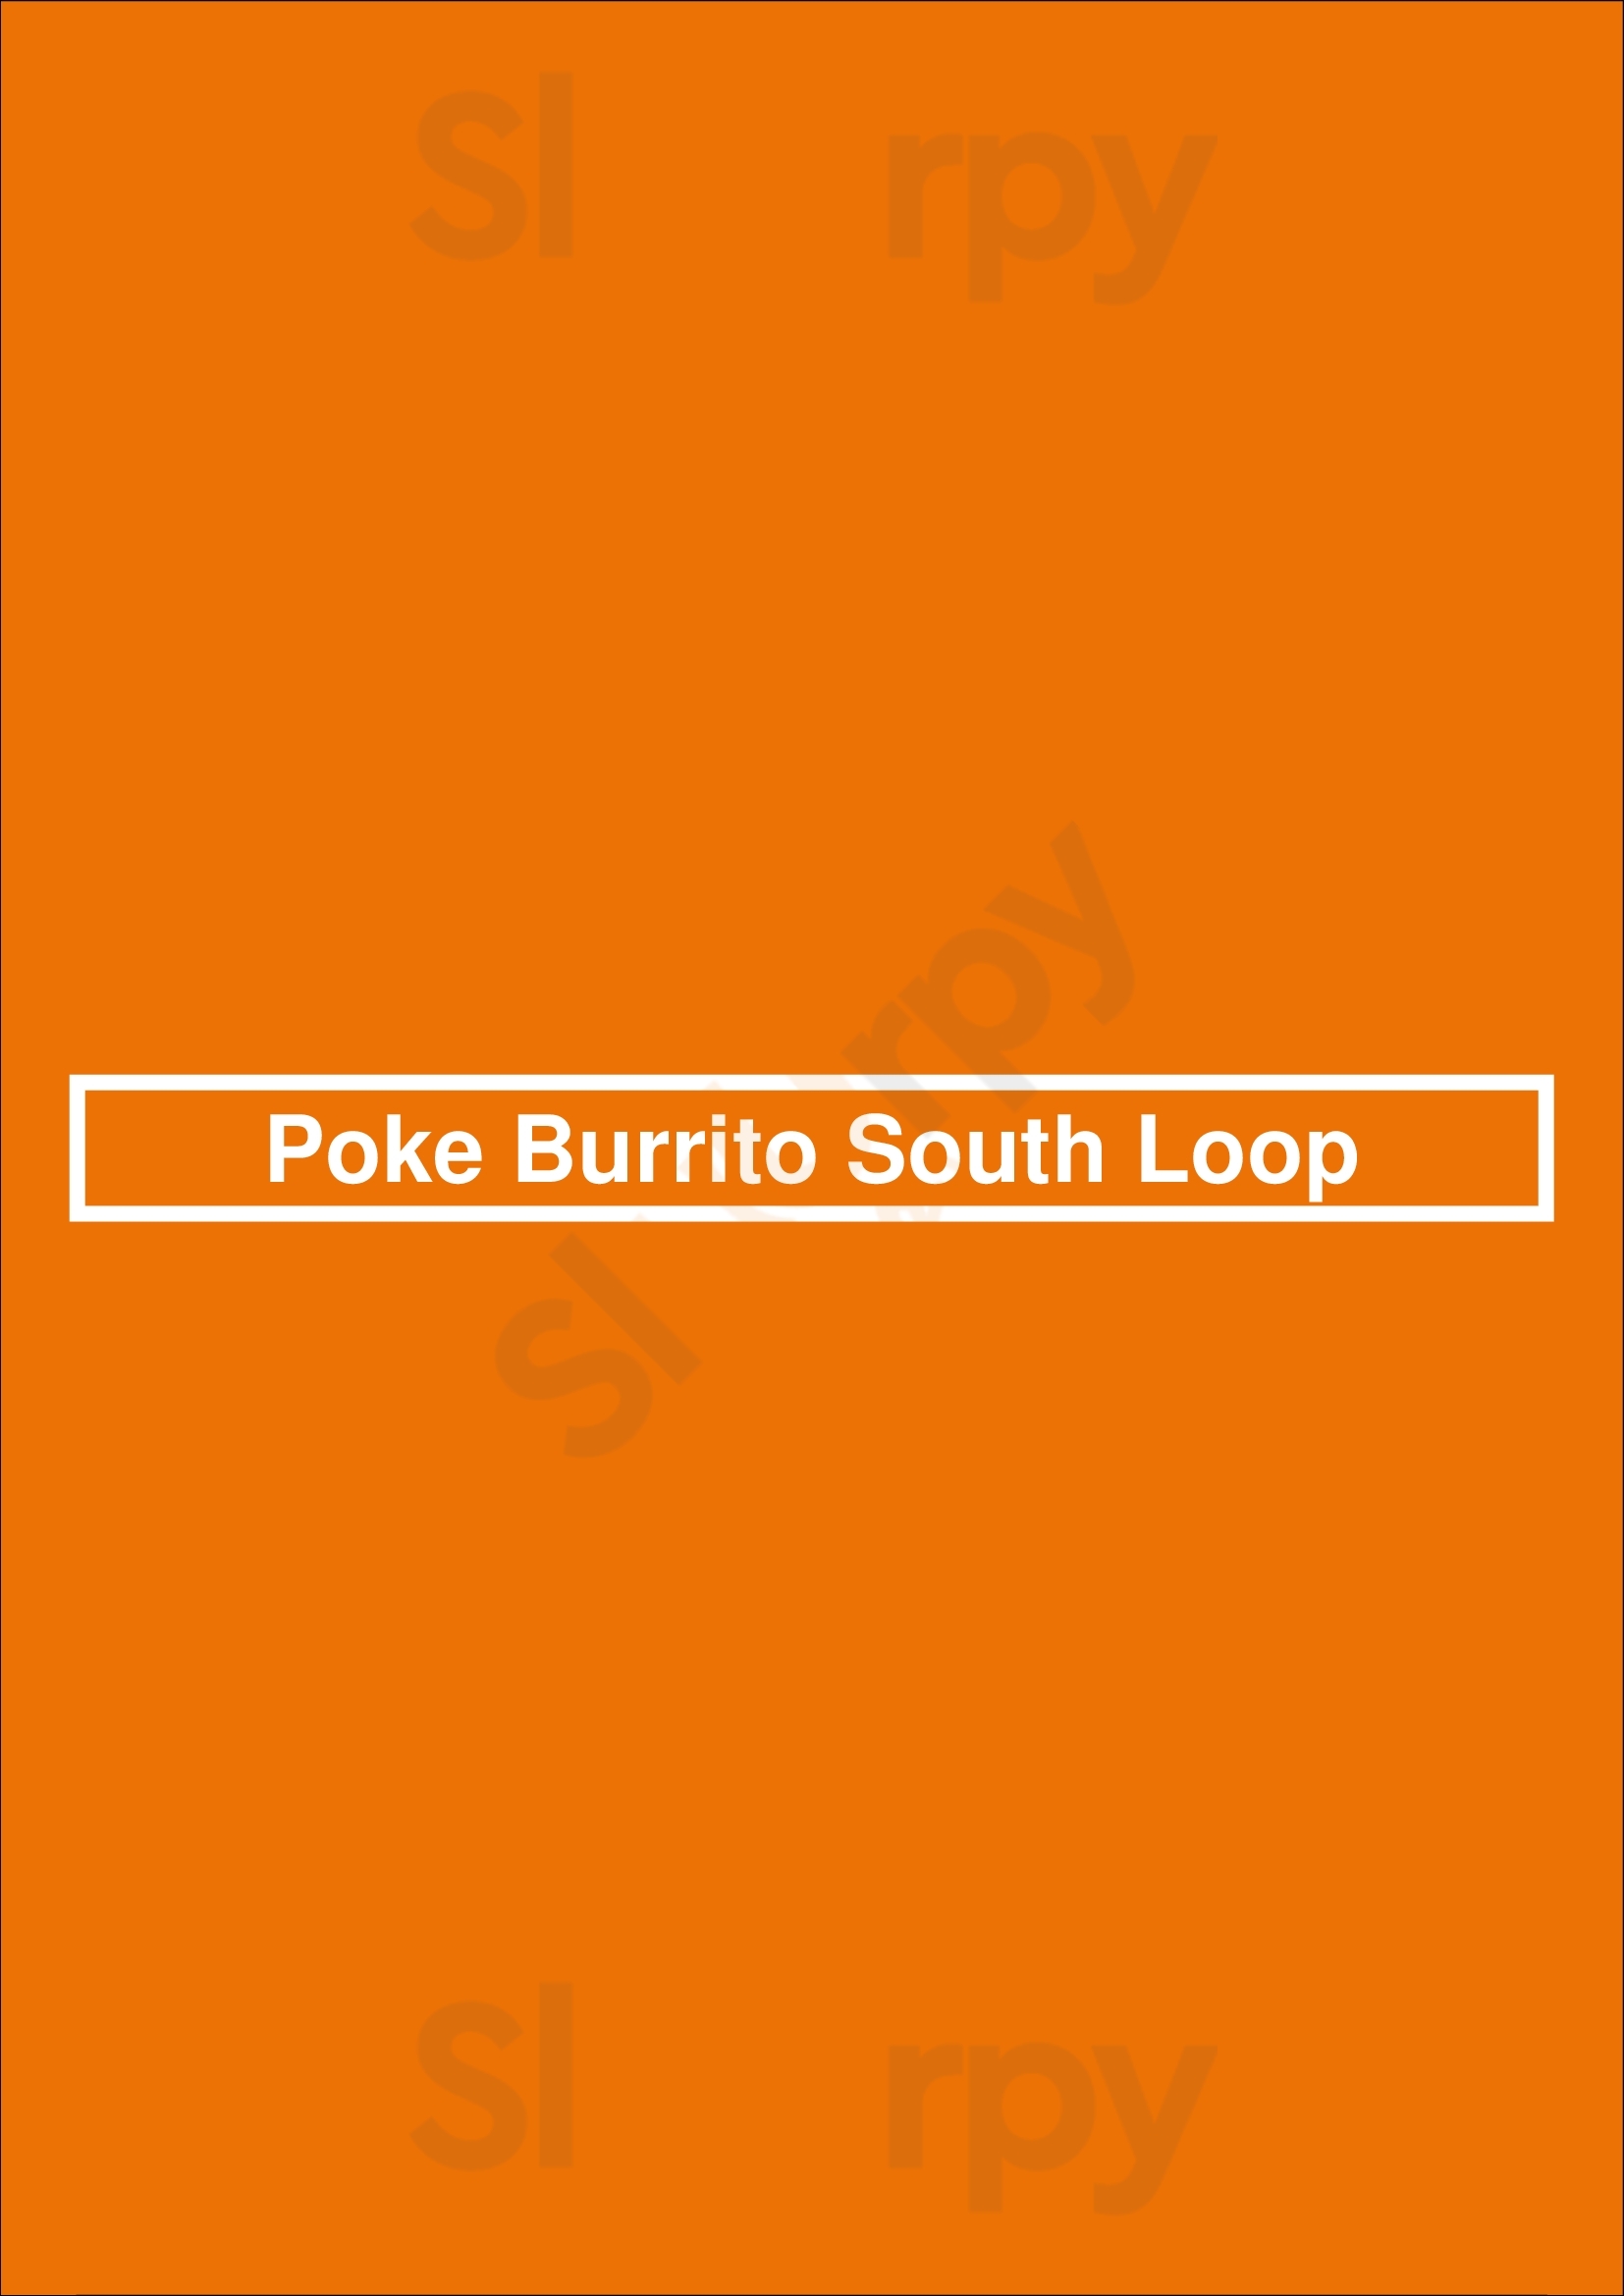 Poke Burrito South Loop Chicago Menu - 1